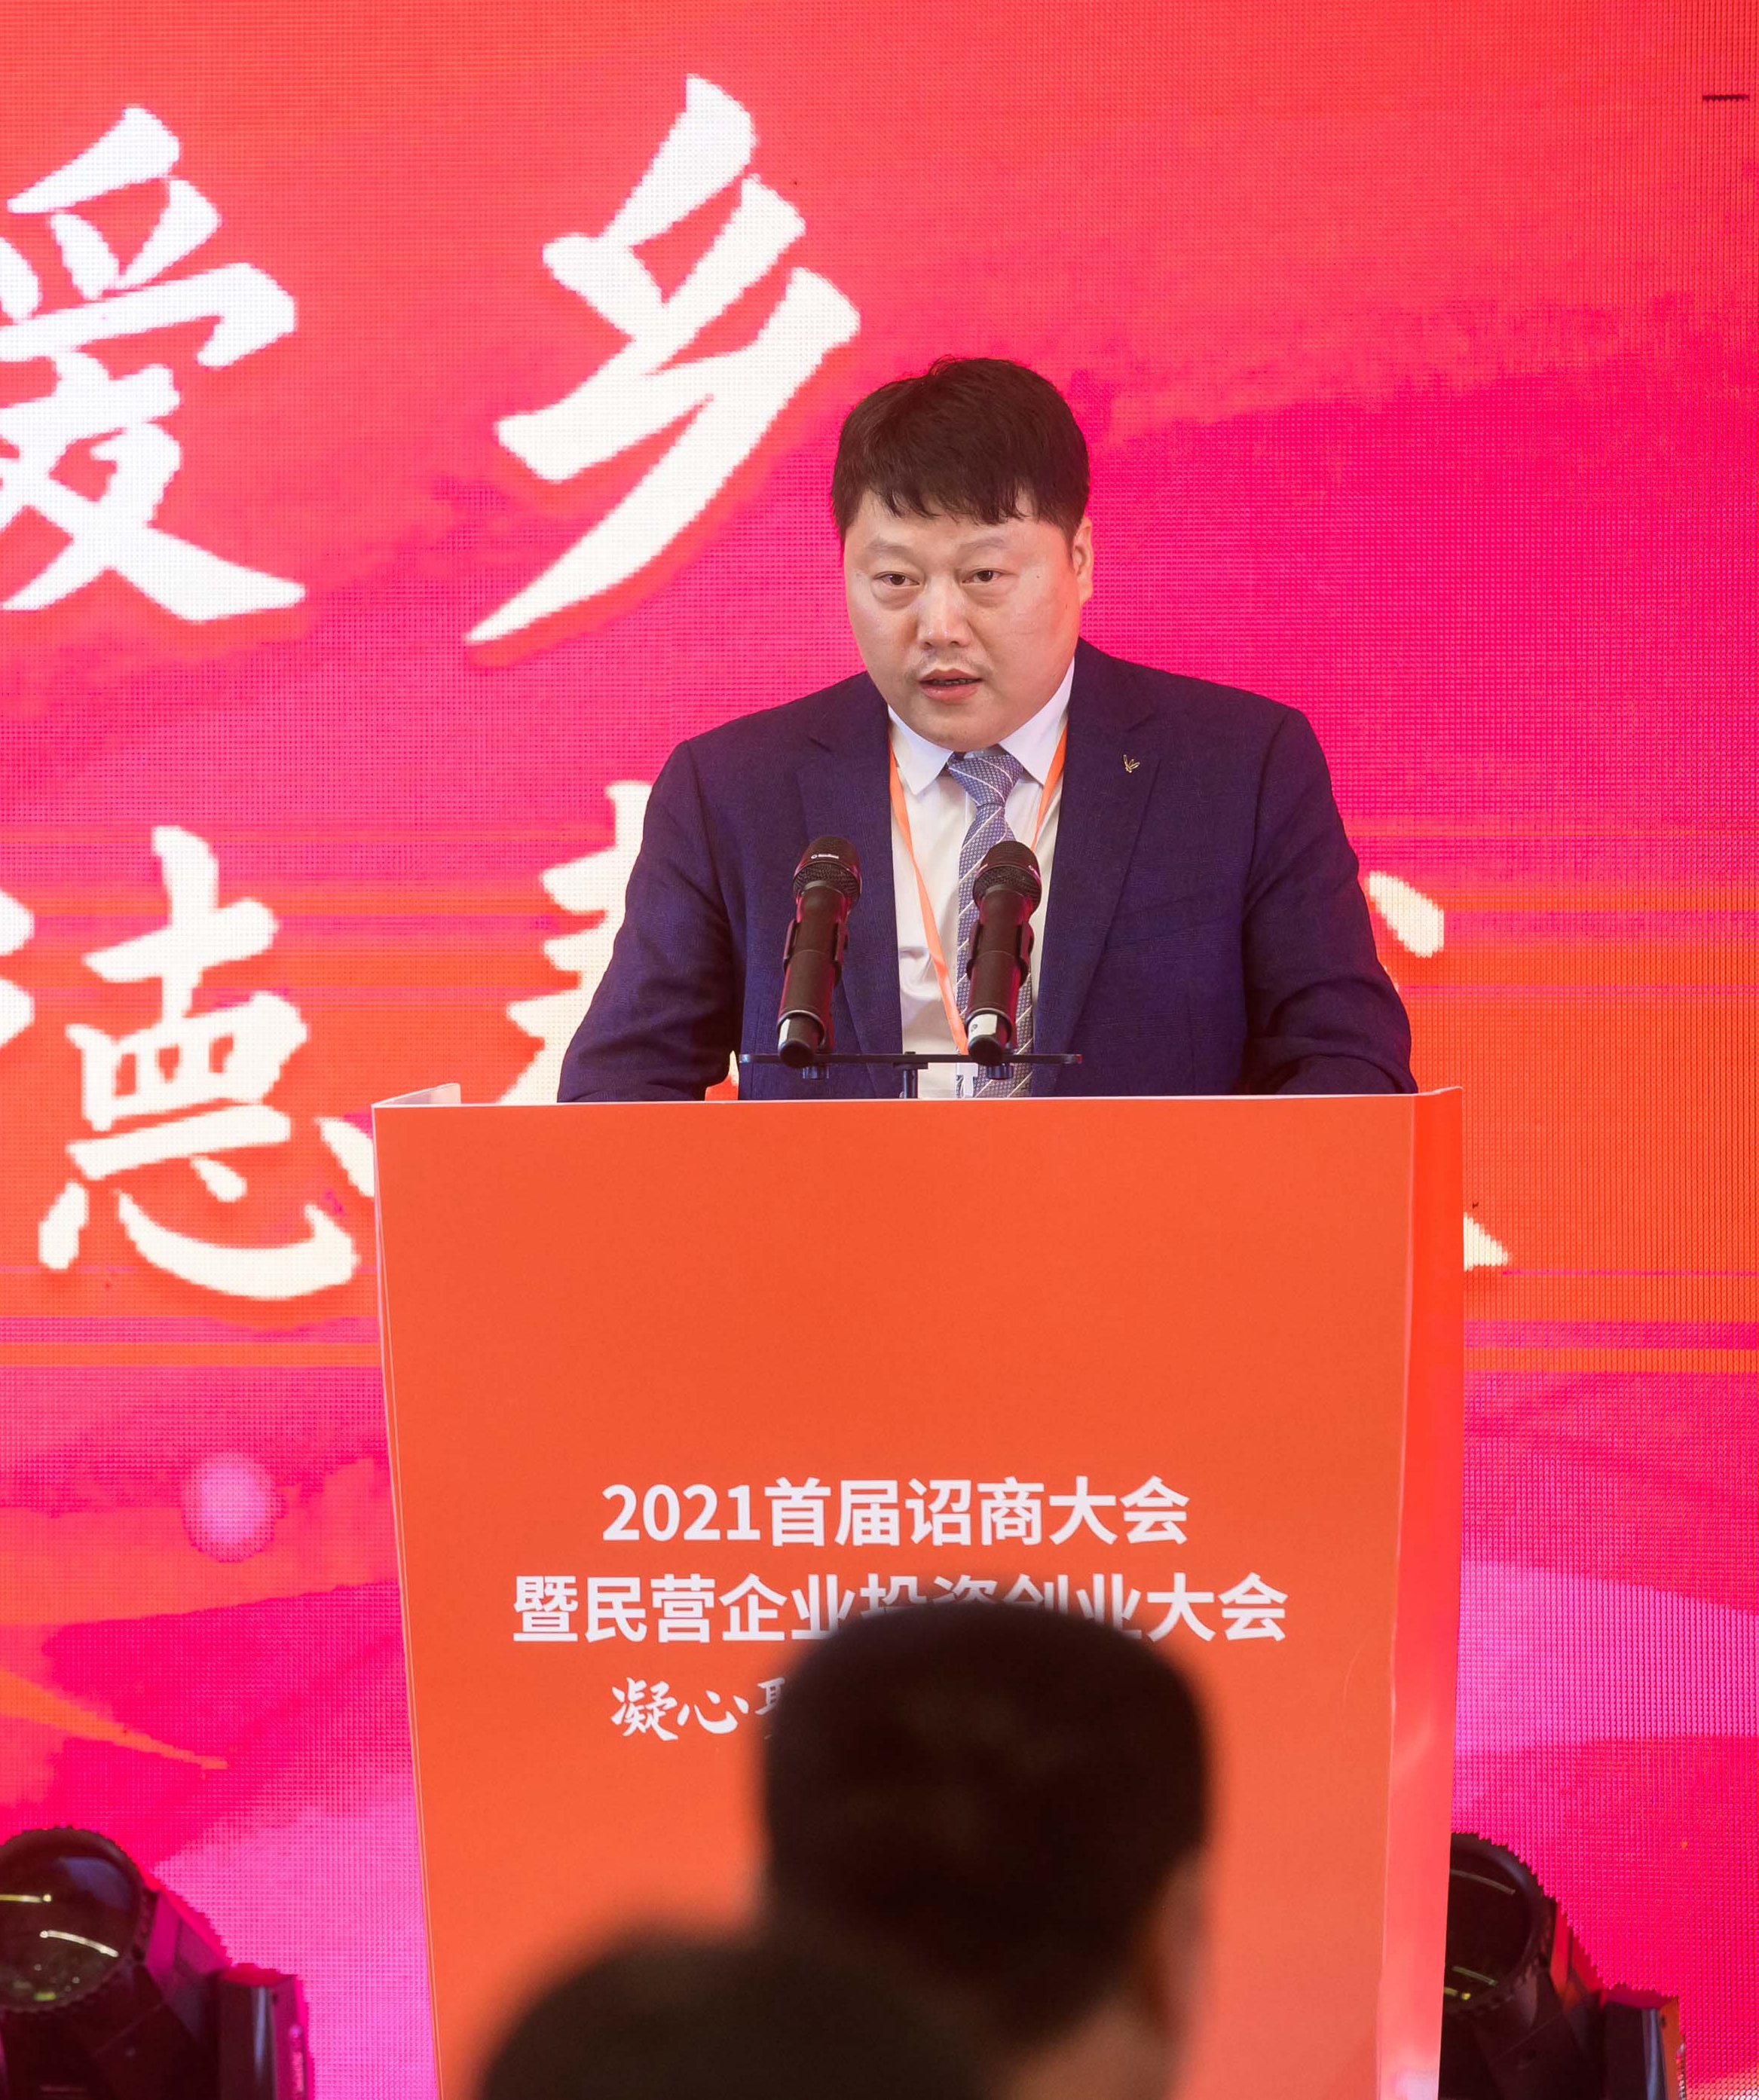 福建瑞升电子科技有限公司董事长陈映义表示